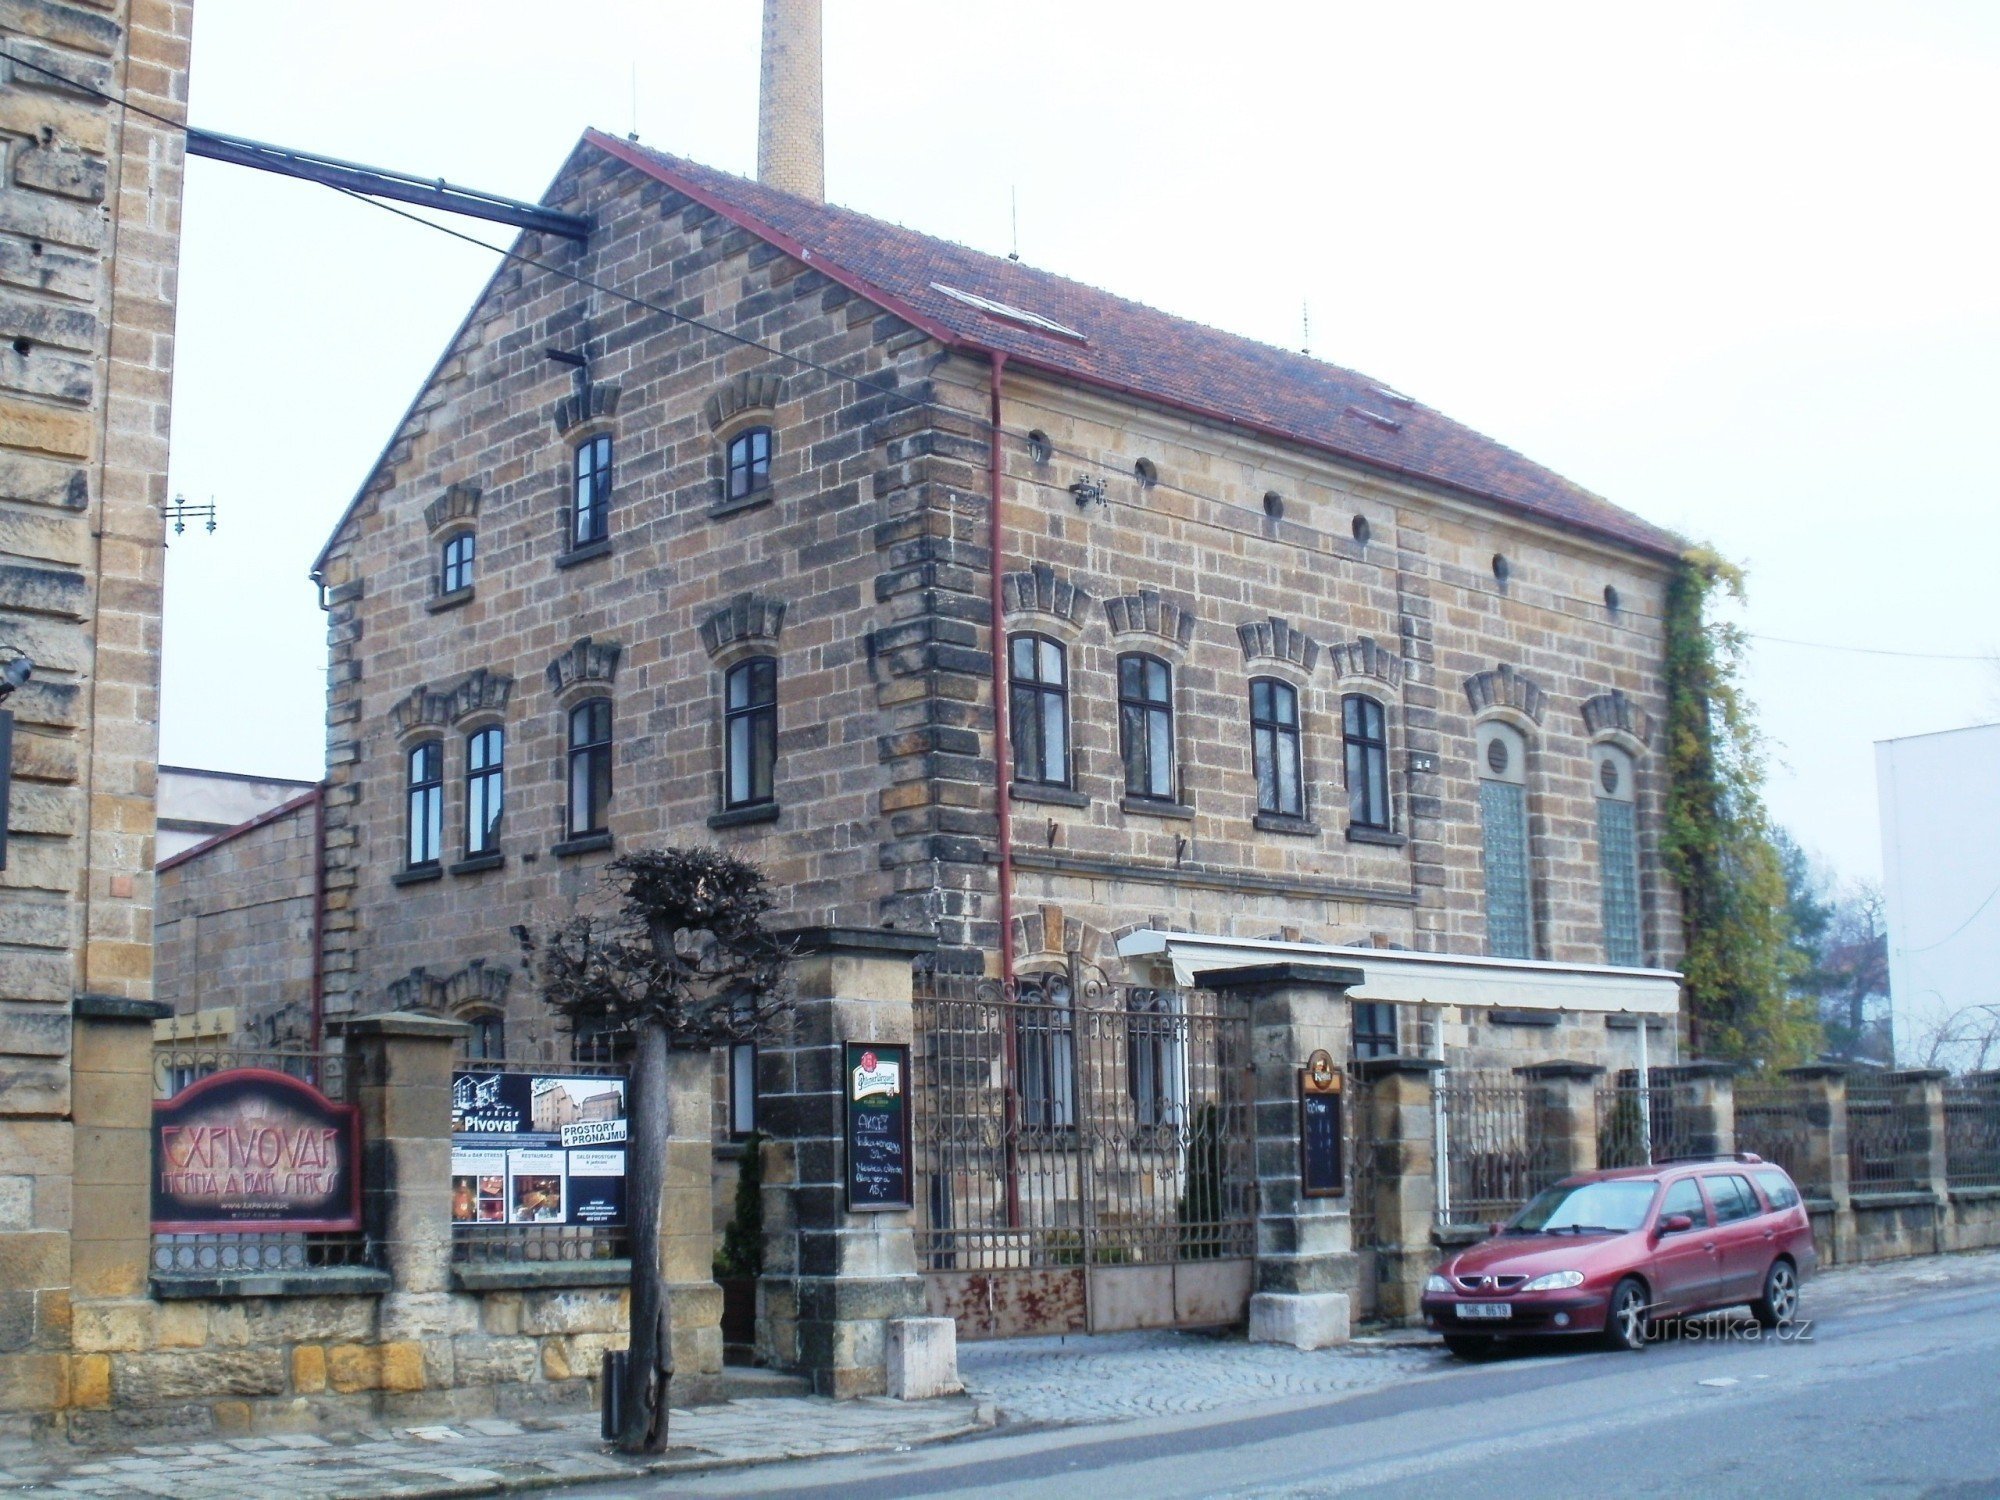 Hořice - Expivovar (бывшая пивоварня)